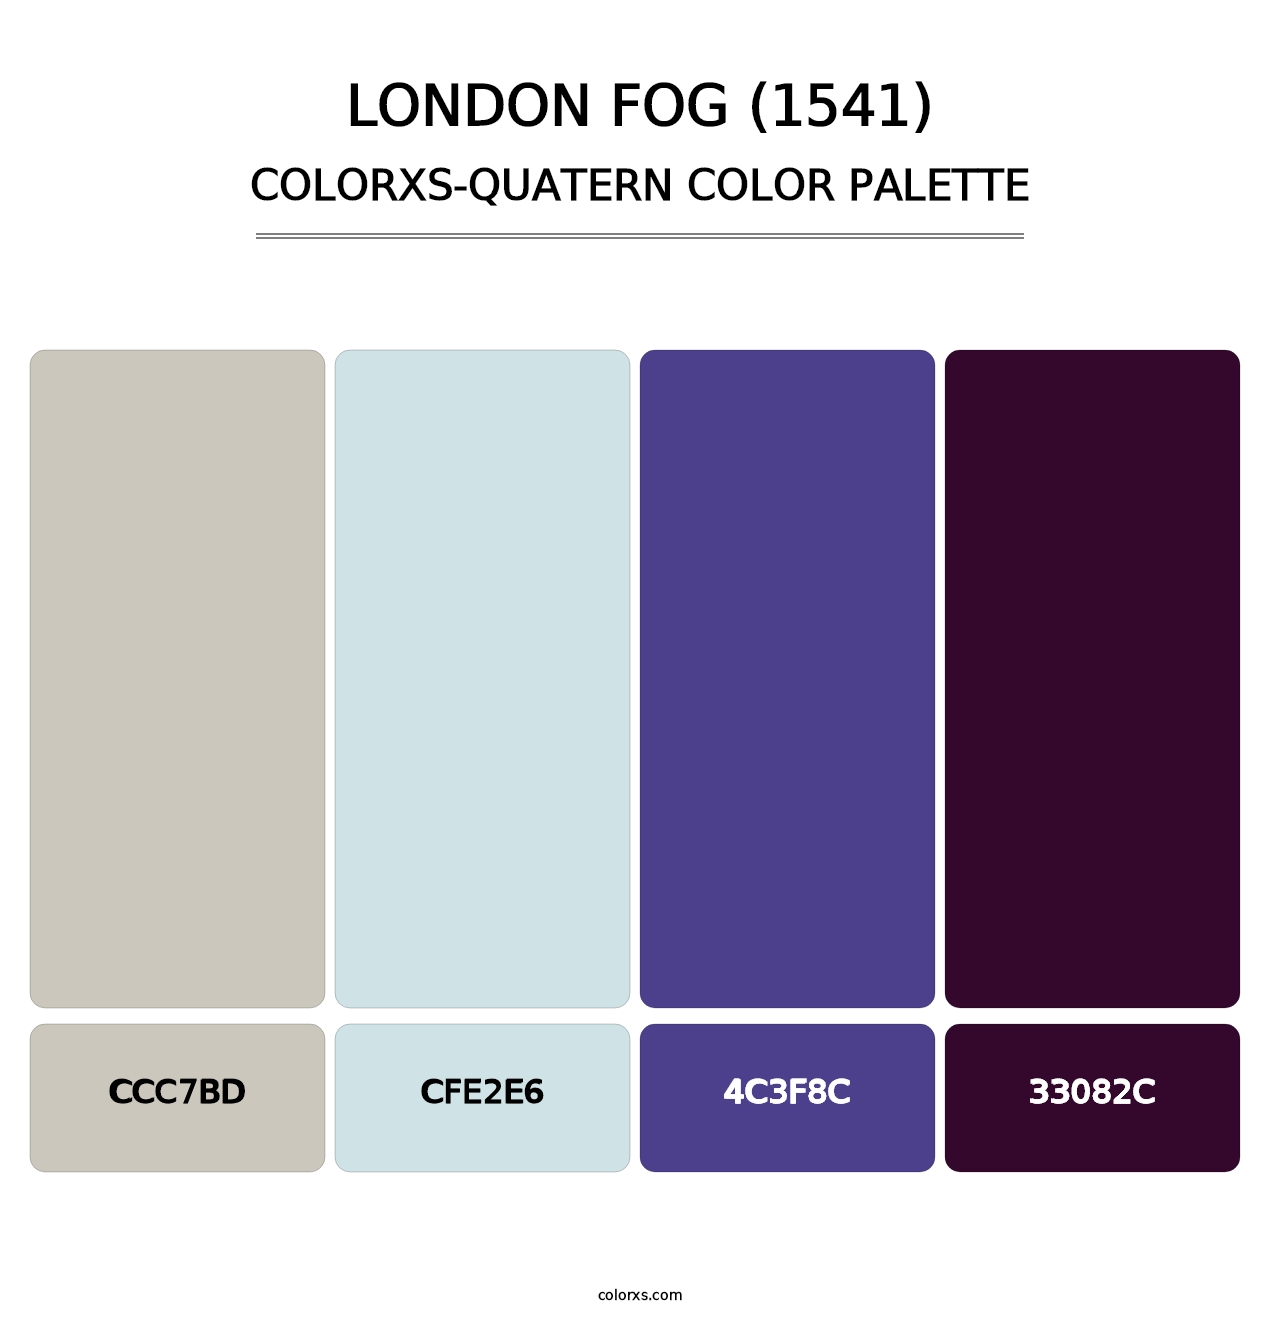 London Fog (1541) - Colorxs Quatern Palette